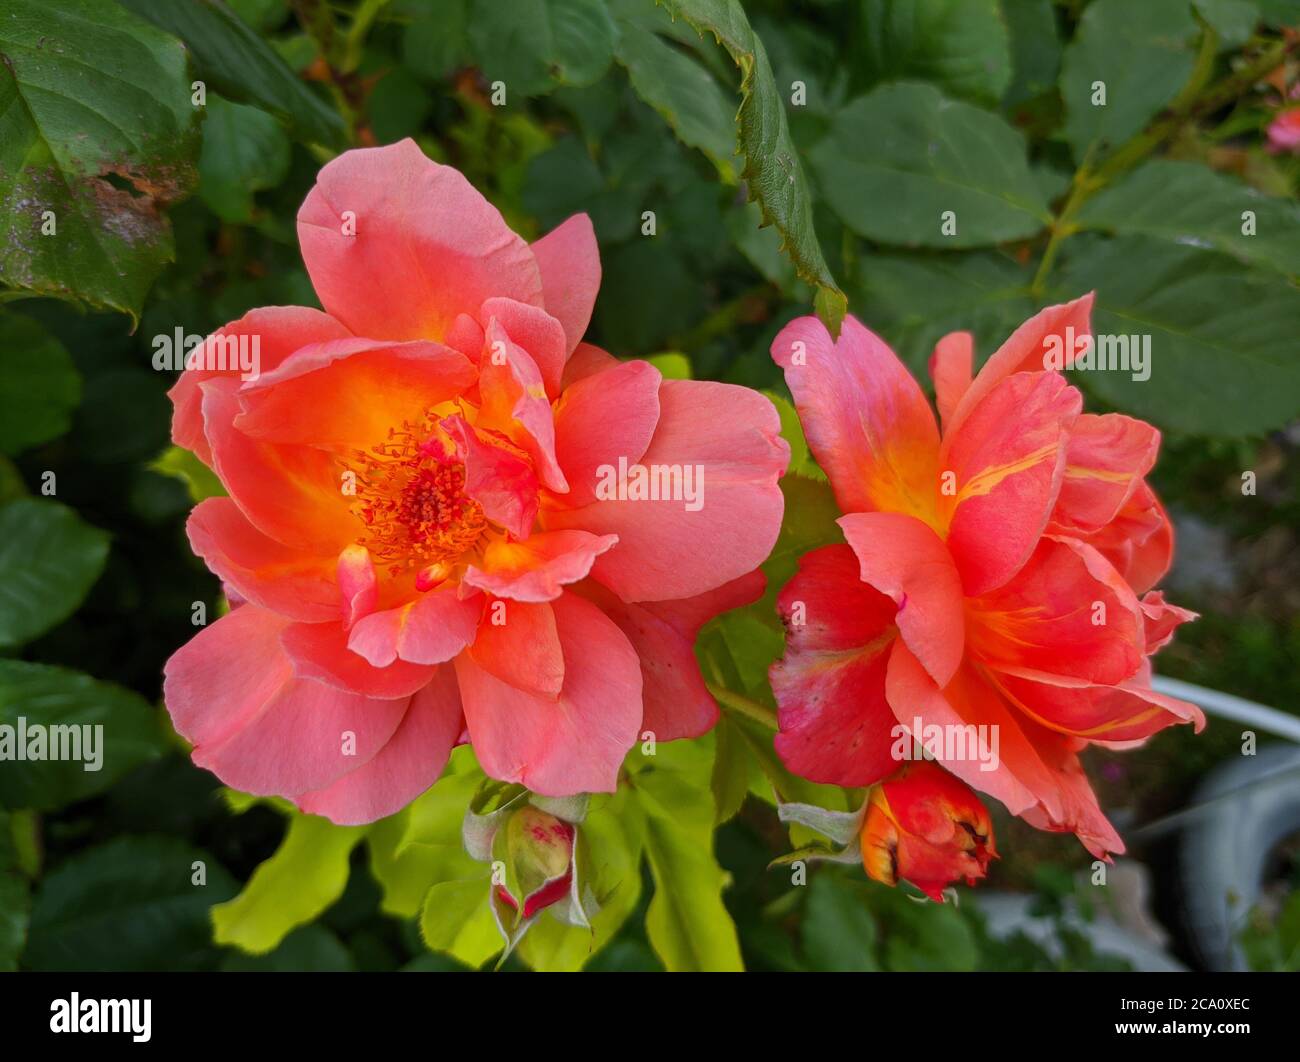 arancio-rosa due fiori di rosa sullo sfondo di foglie verdi Foto Stock